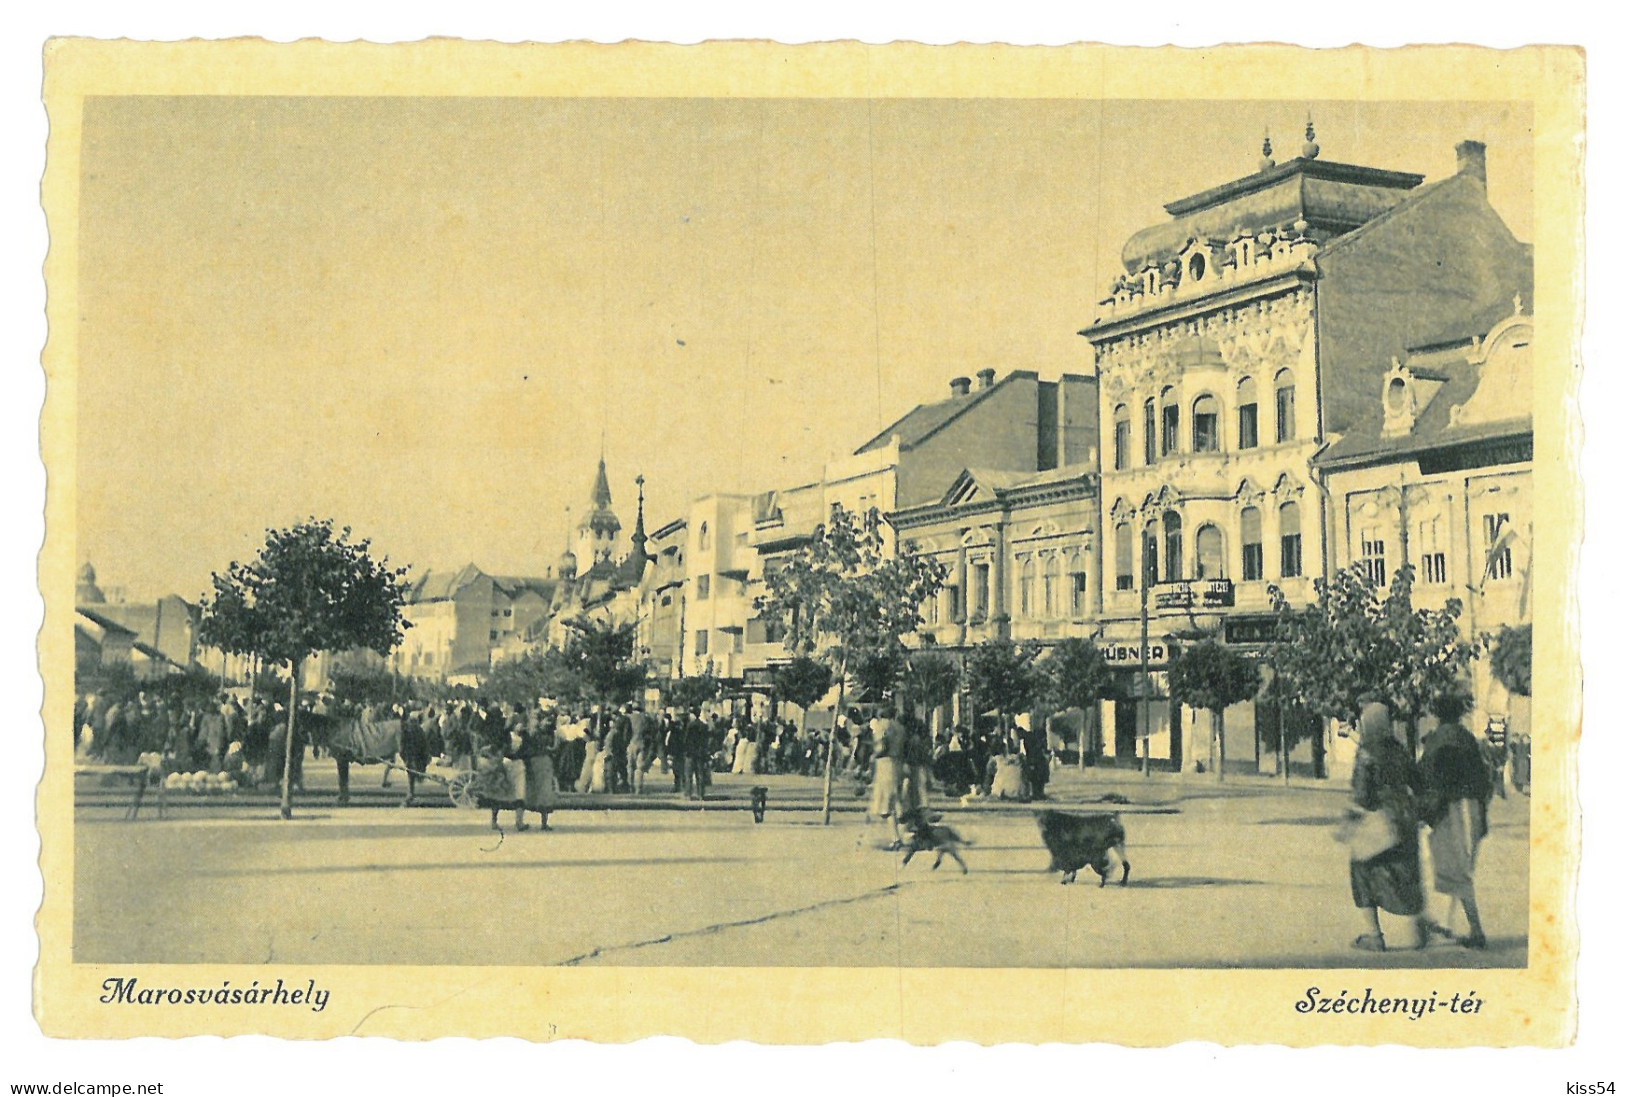 RO 40 - 17922 TARGU-MURES, Market, Romania - Old Postcard, Real PHOTO - Unused - Romania